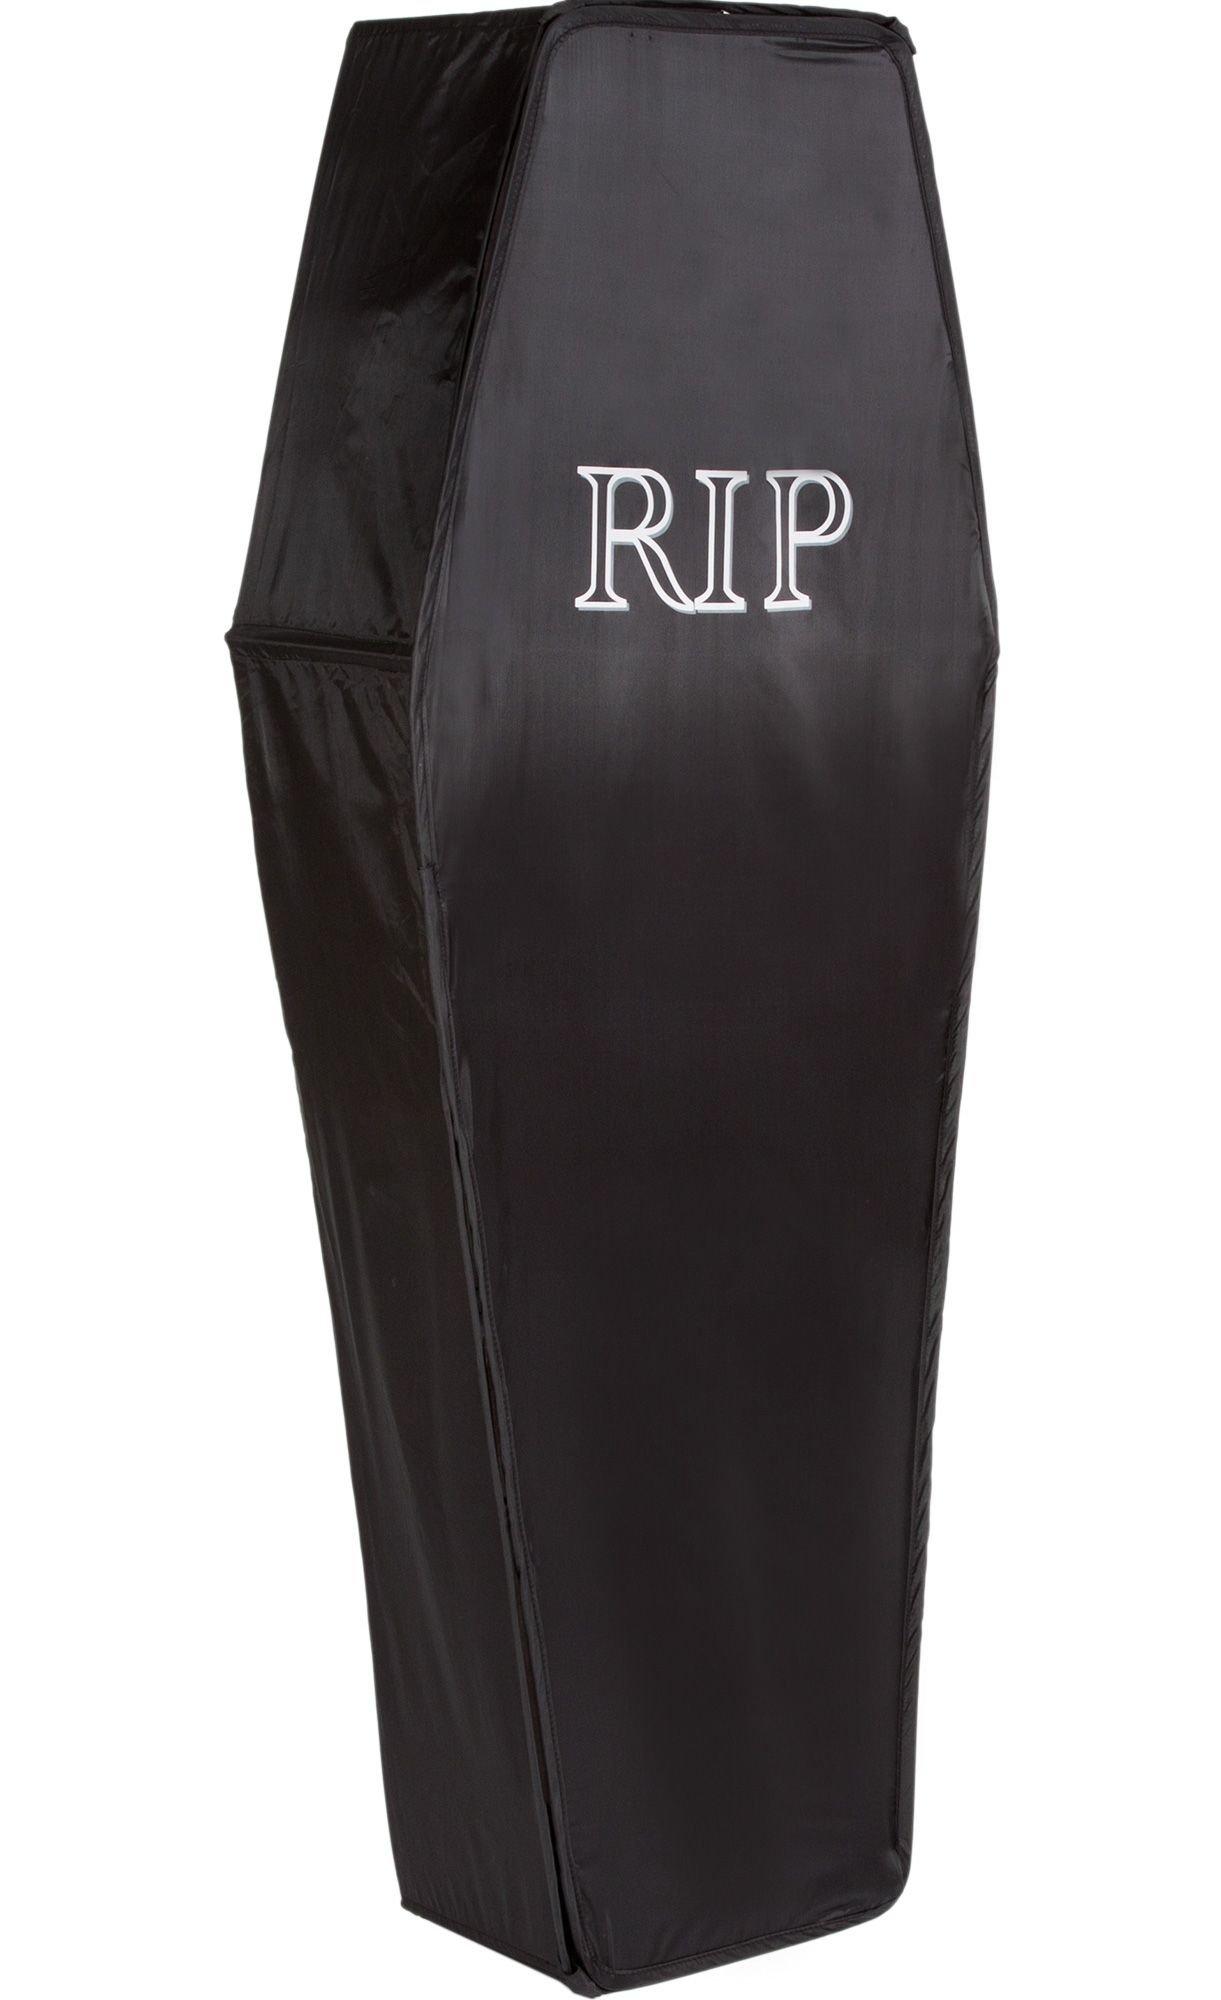 Pop-Up Black Coffin